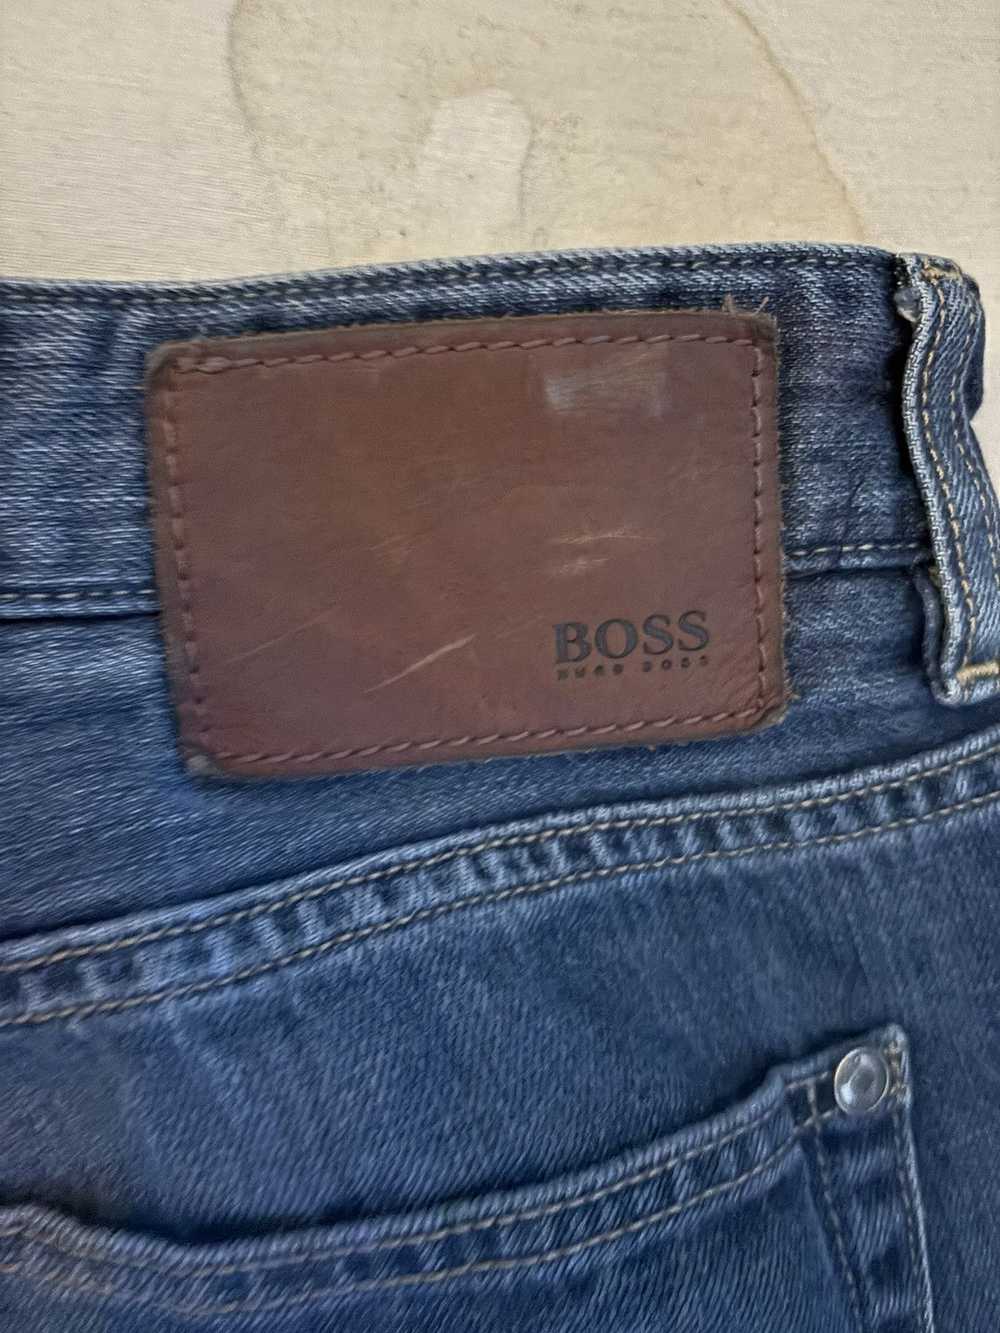 Hugo Boss Hugo boss blue jeans size 36 - image 6